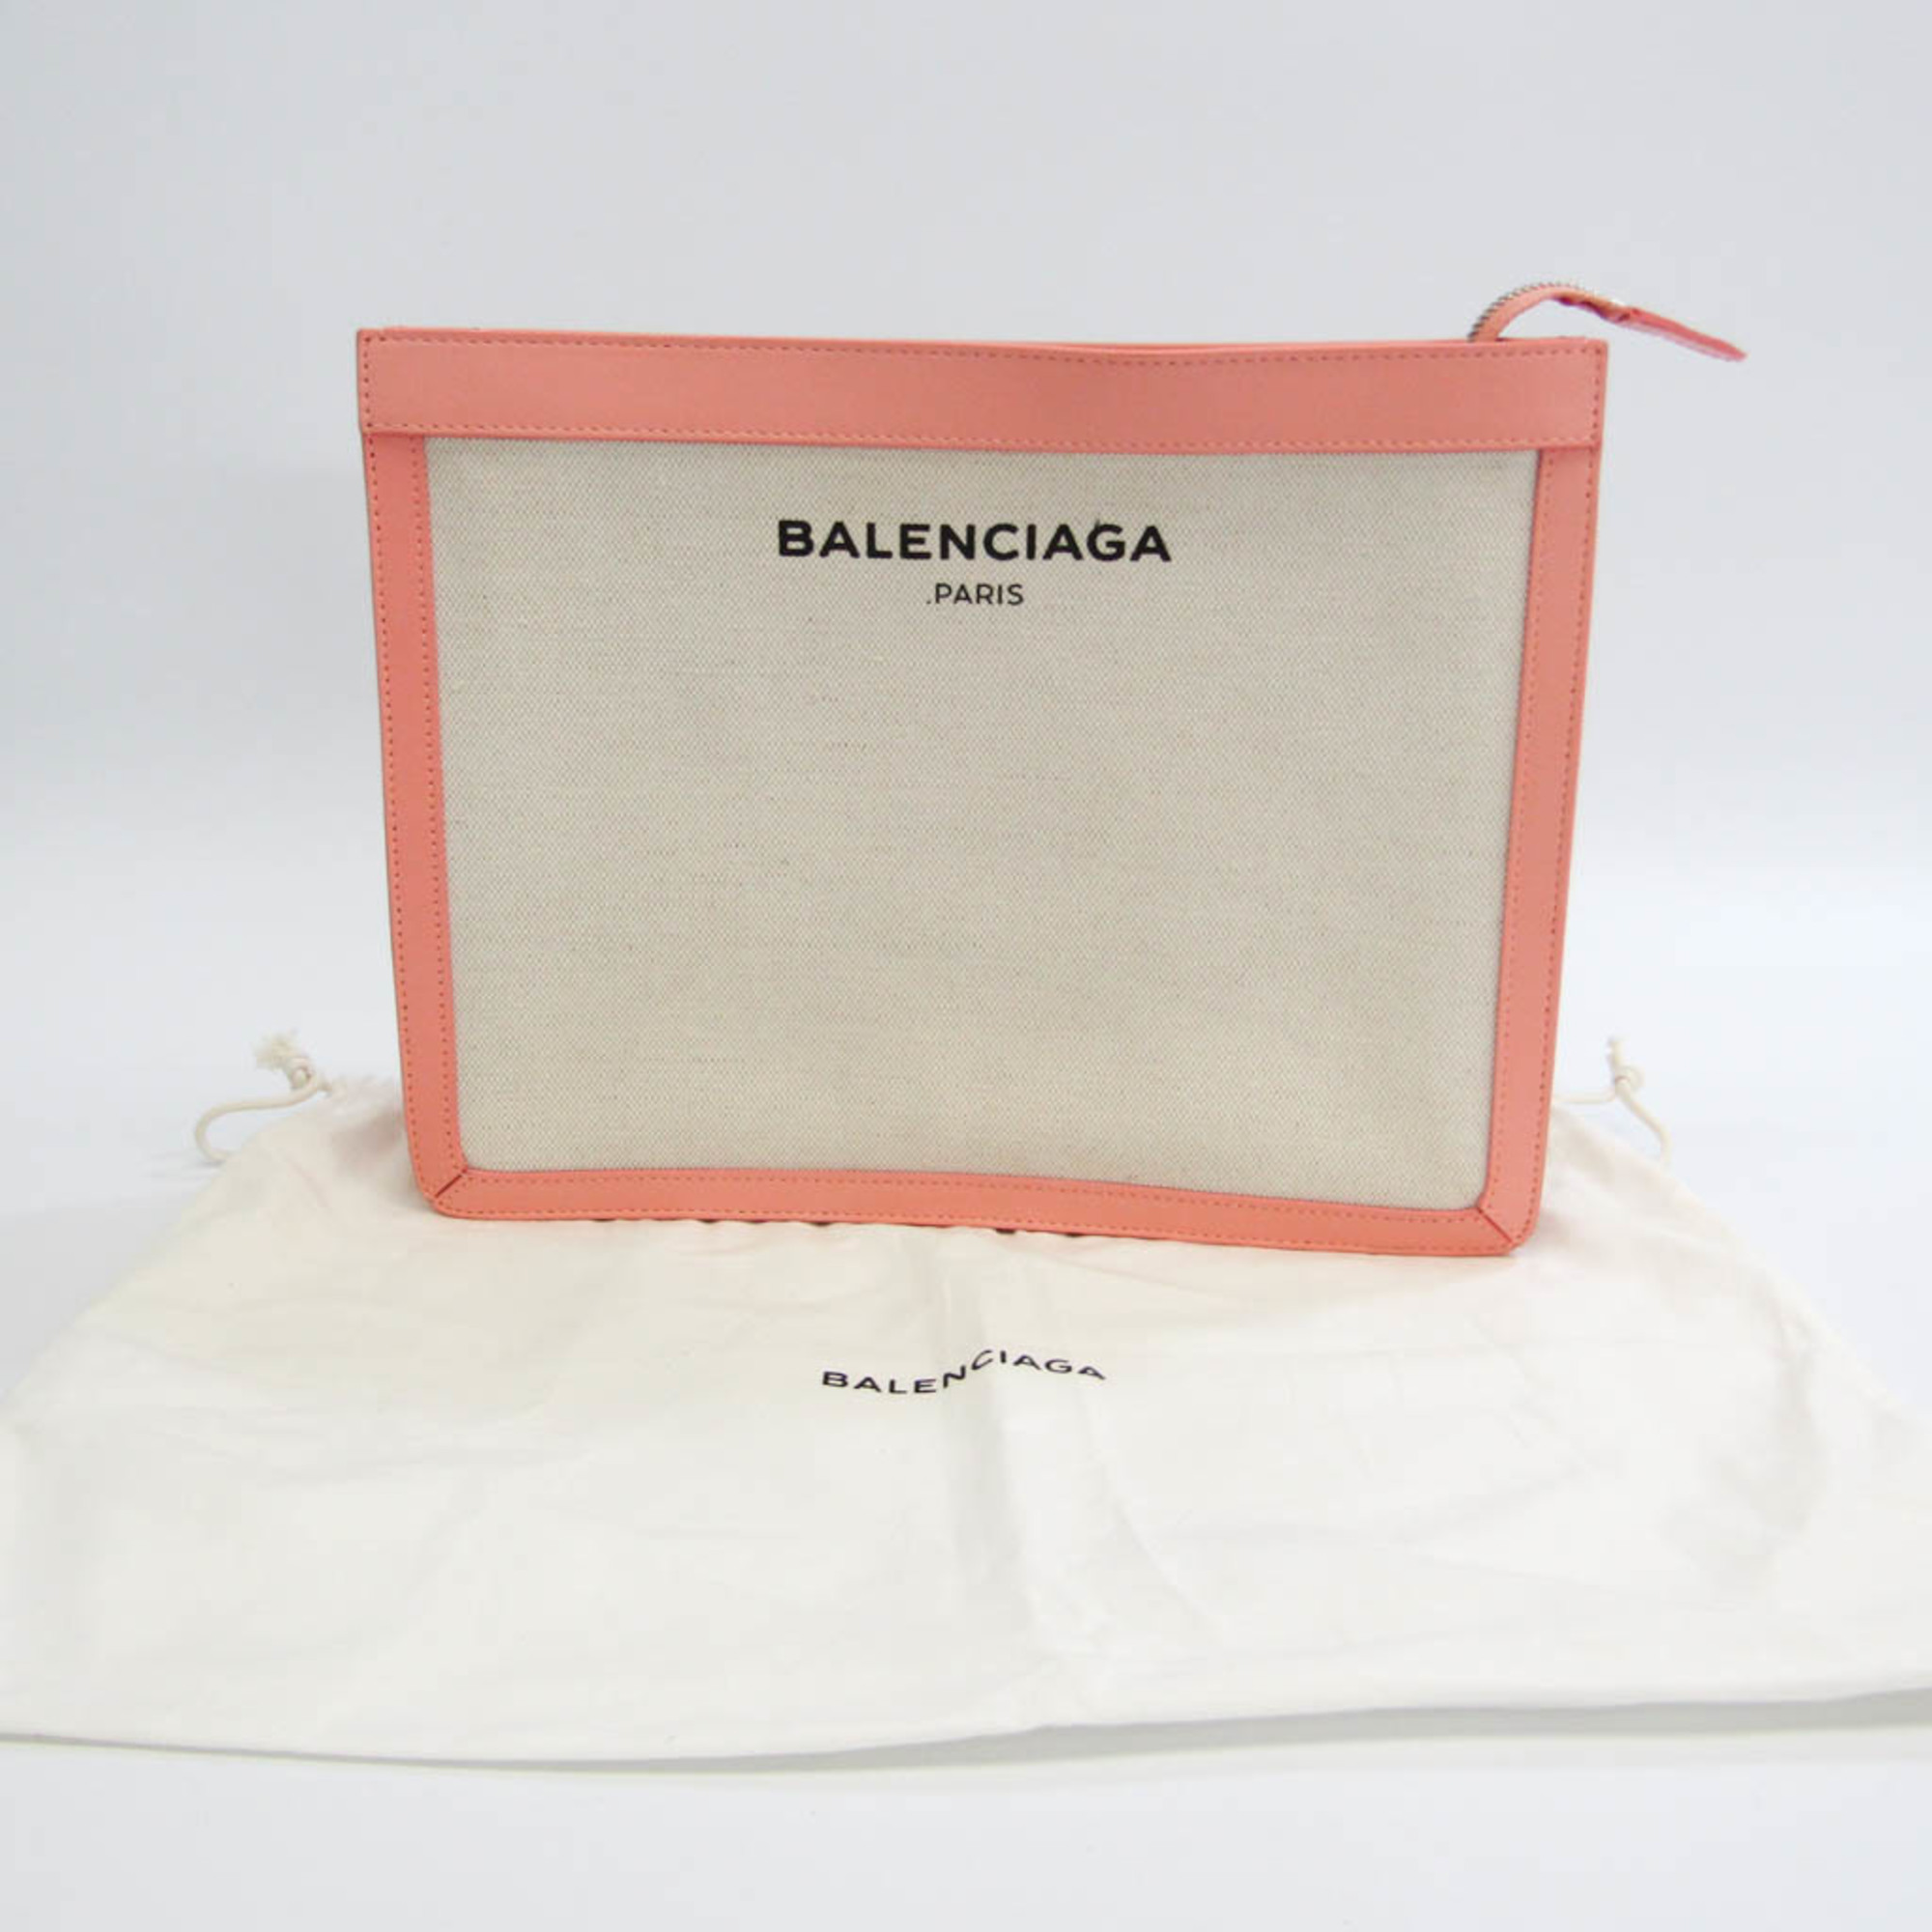 バレンシアガ(Balenciaga) クラシック 410119 レディース キャンバス,レザー クラッチバッグ アイボリー,サーモンピンク